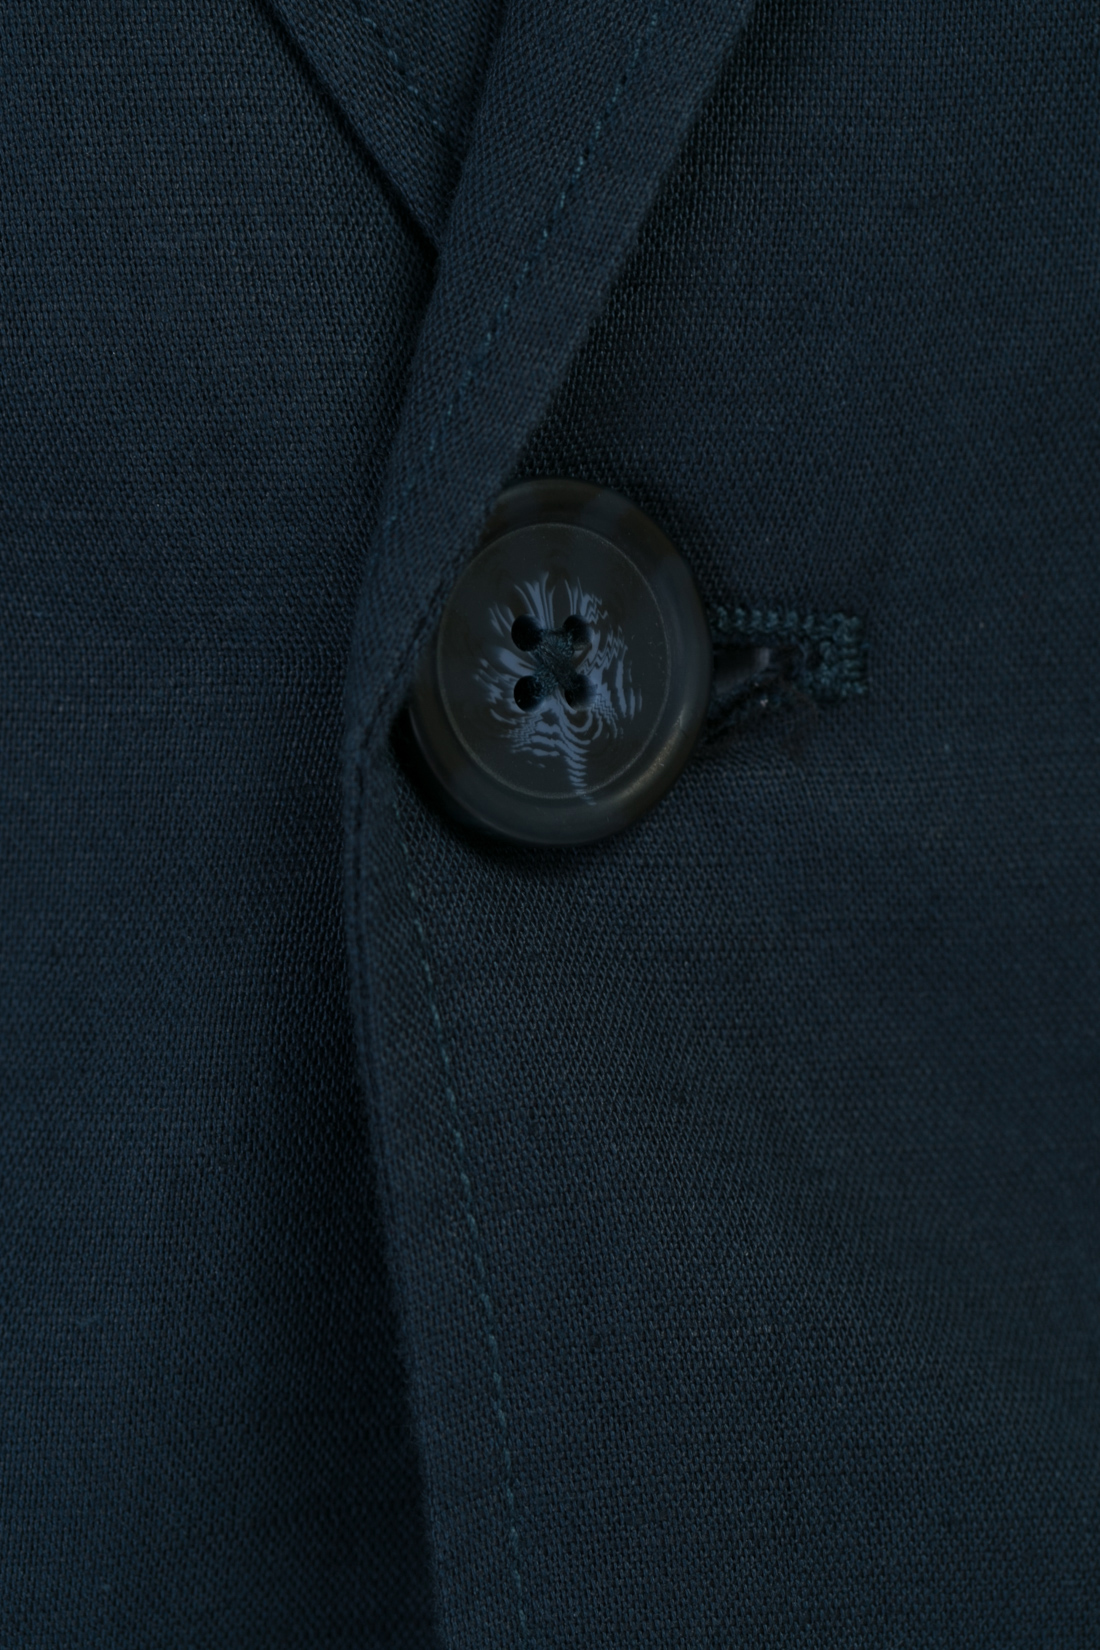 Пиджак из натуральных волокон (арт. baon B627002), размер S, цвет синий Пиджак из натуральных волокон (арт. baon B627002) - фото 3